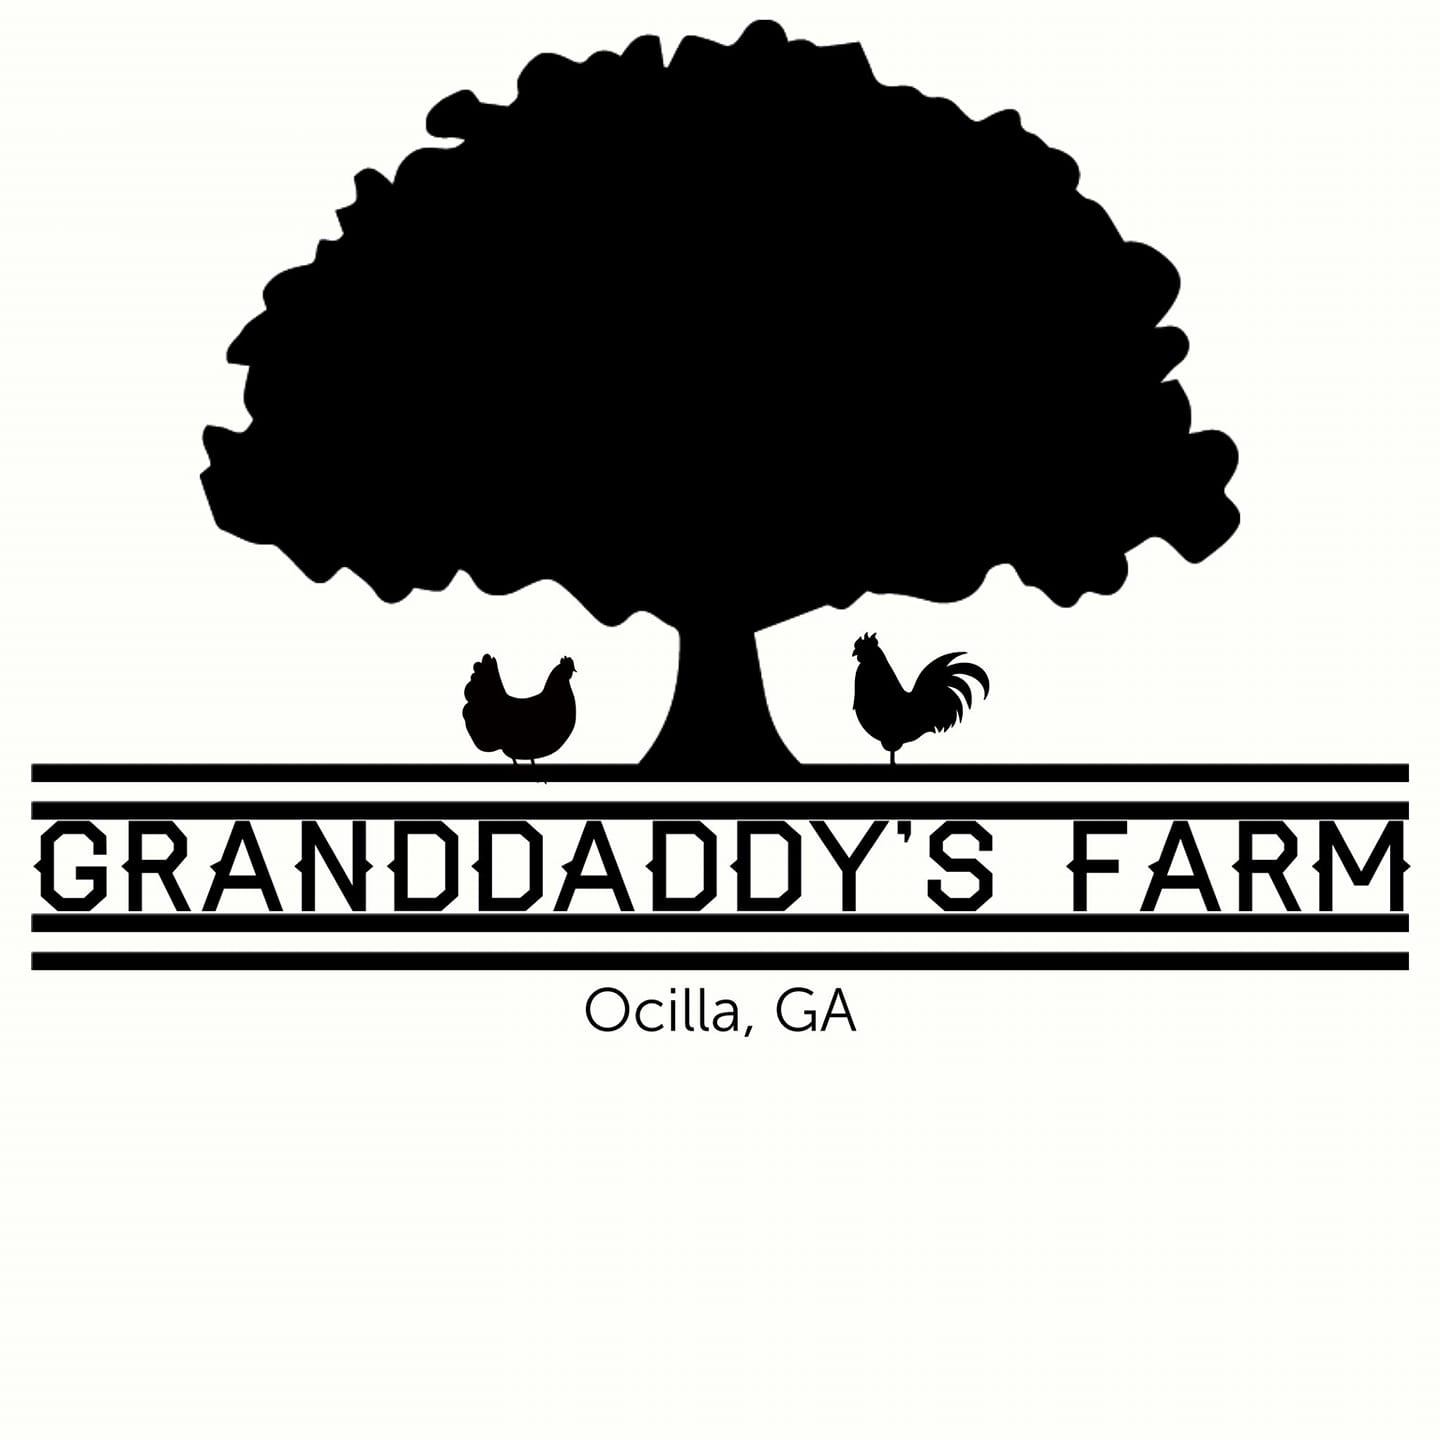 Granddaddy’s Farm